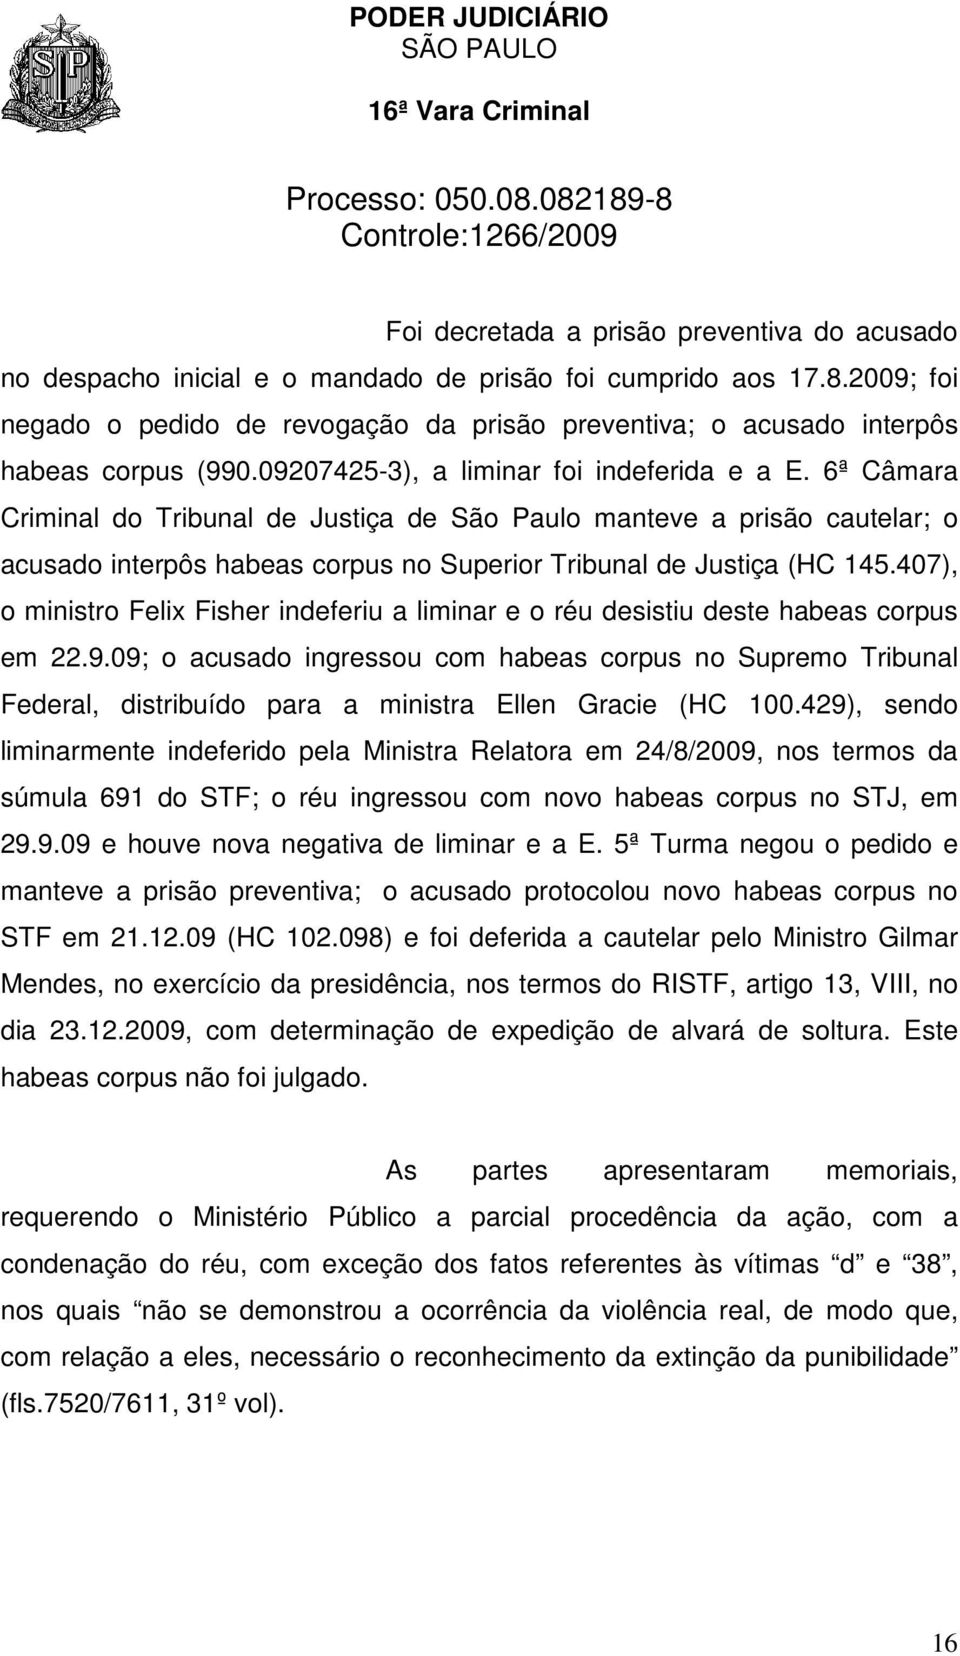 6ª Câmara Criminal do Tribunal de Justiça de São Paulo manteve a prisão cautelar; o acusado interpôs habeas corpus no Superior Tribunal de Justiça (HC 145.